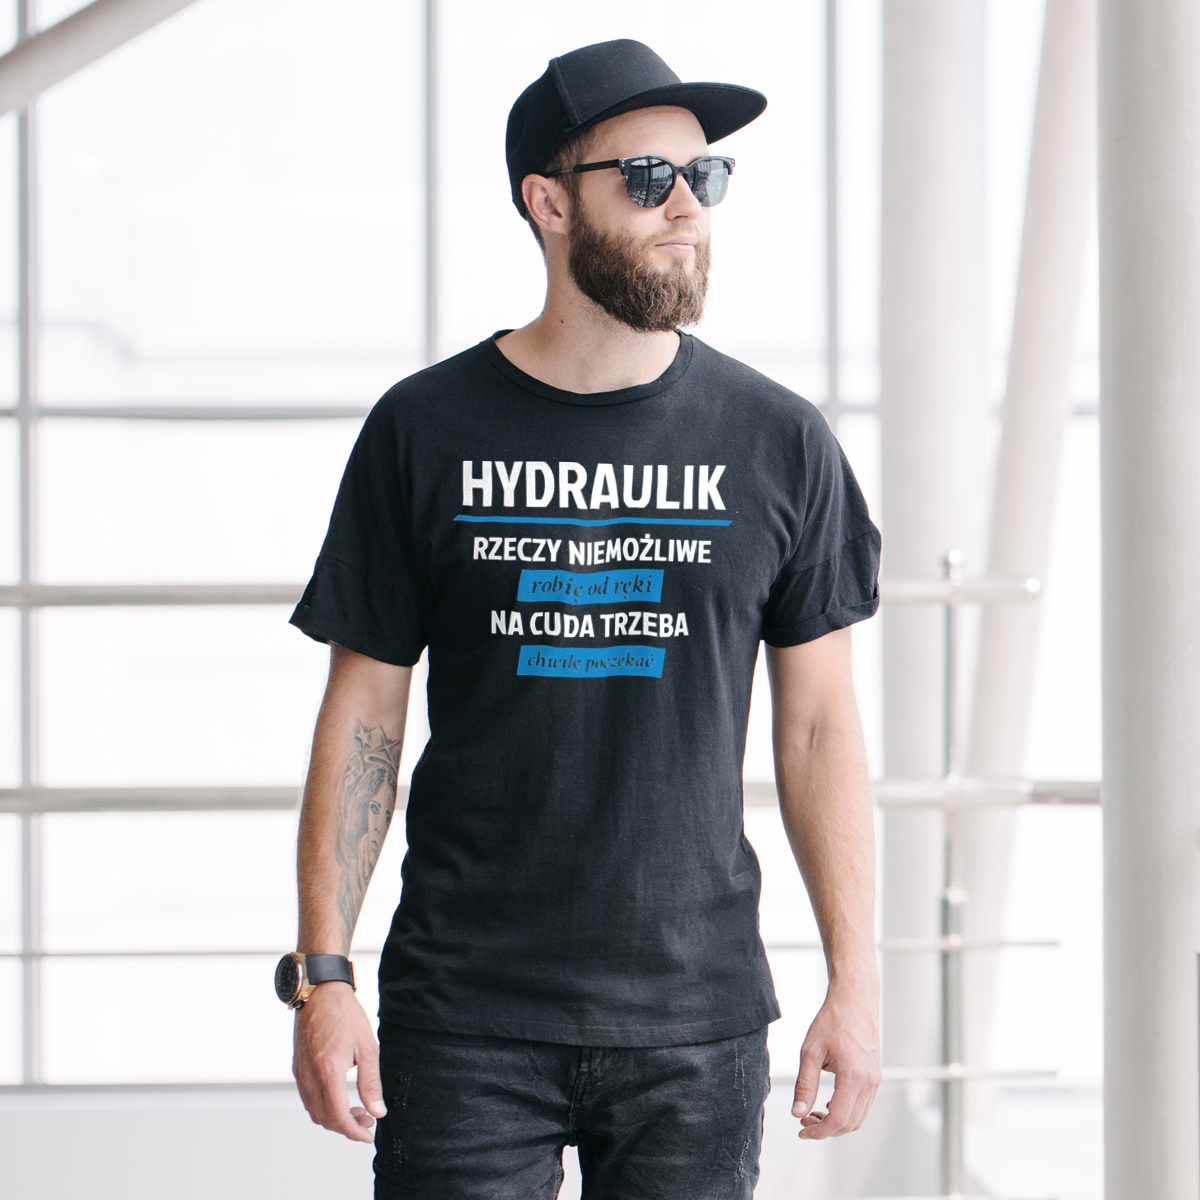 Hydraulik - Rzeczy Niemożliwe Robię Od Ręki - Na Cuda Trzeba Chwilę Poczekać - Męska Koszulka Czarna